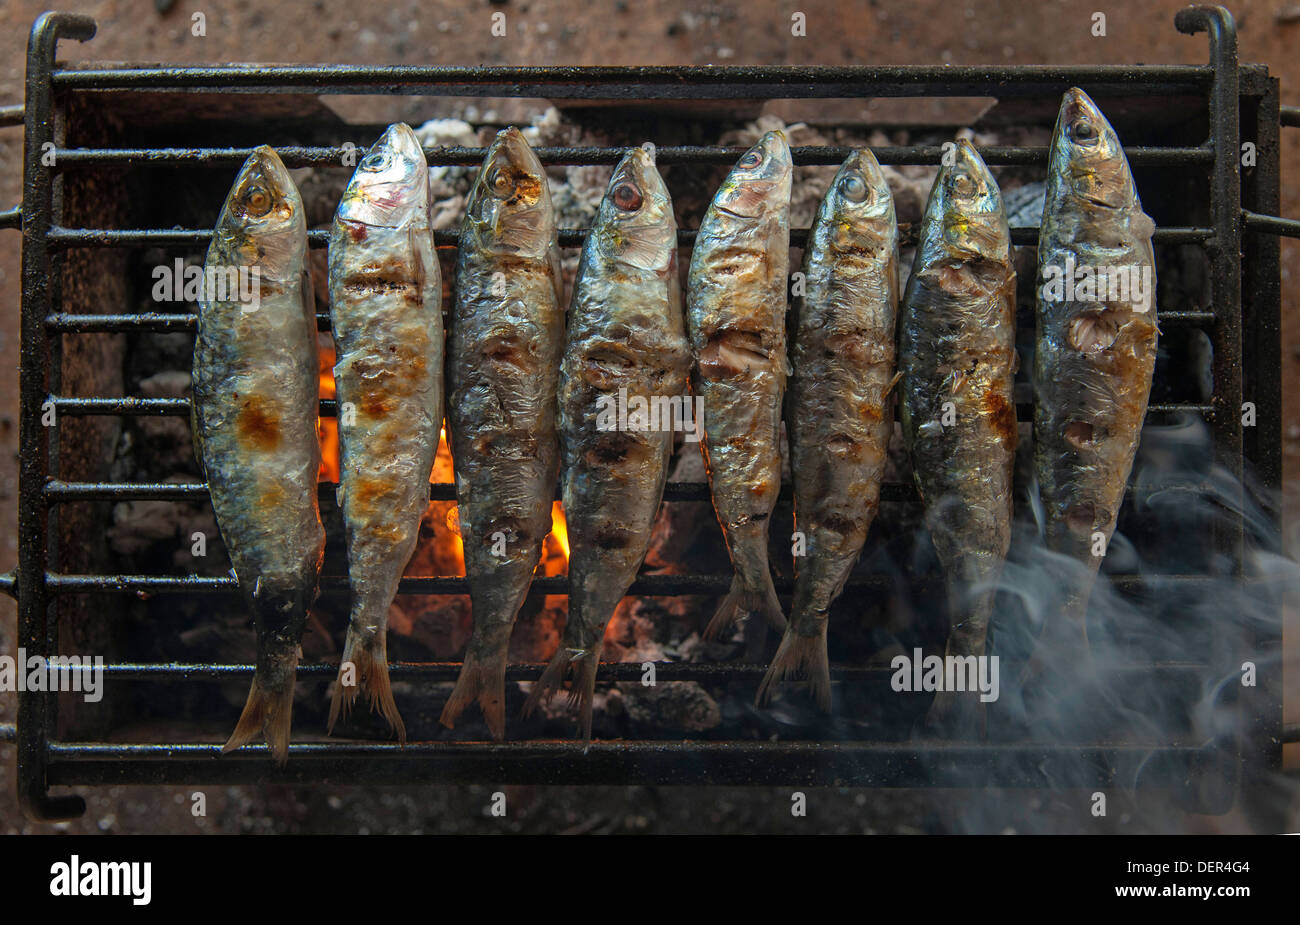 Huit Sardines (Sardina pilchardus) sur la grille du barbecue Banque D'Images